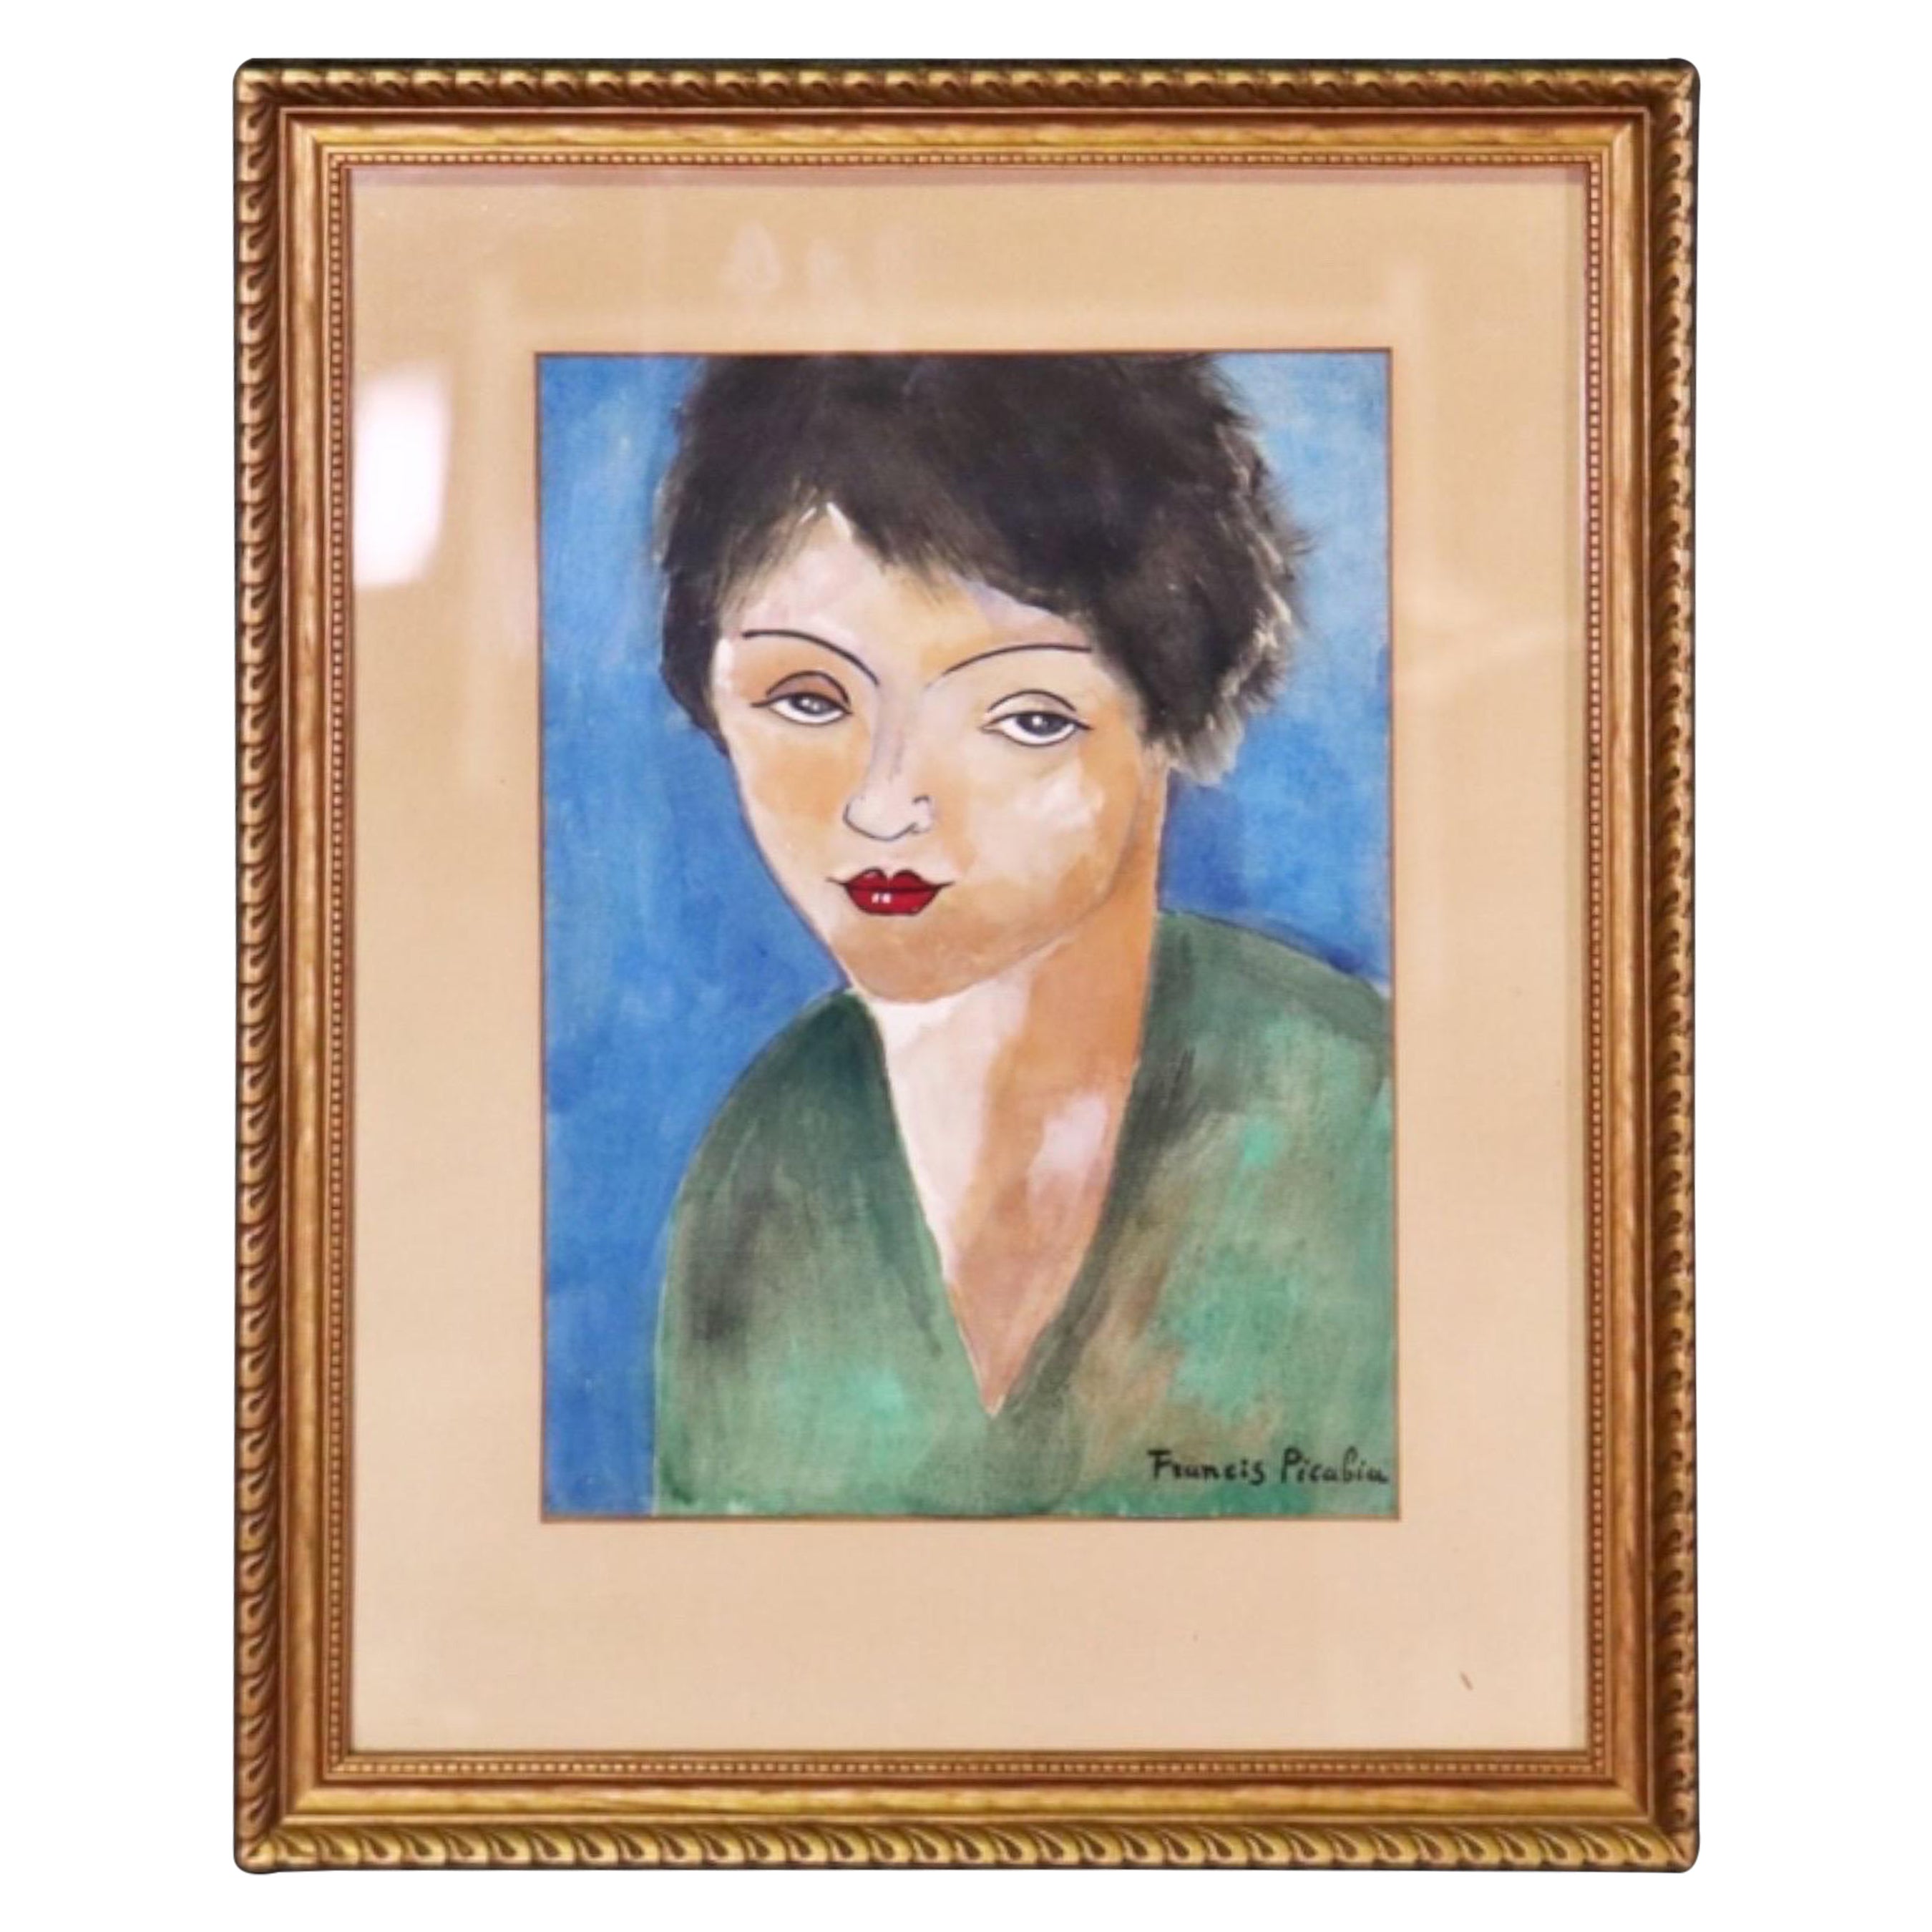 Gerahmtes Aquarell, signiert Francis Picabia, Porträt einer Frau, gerahmt